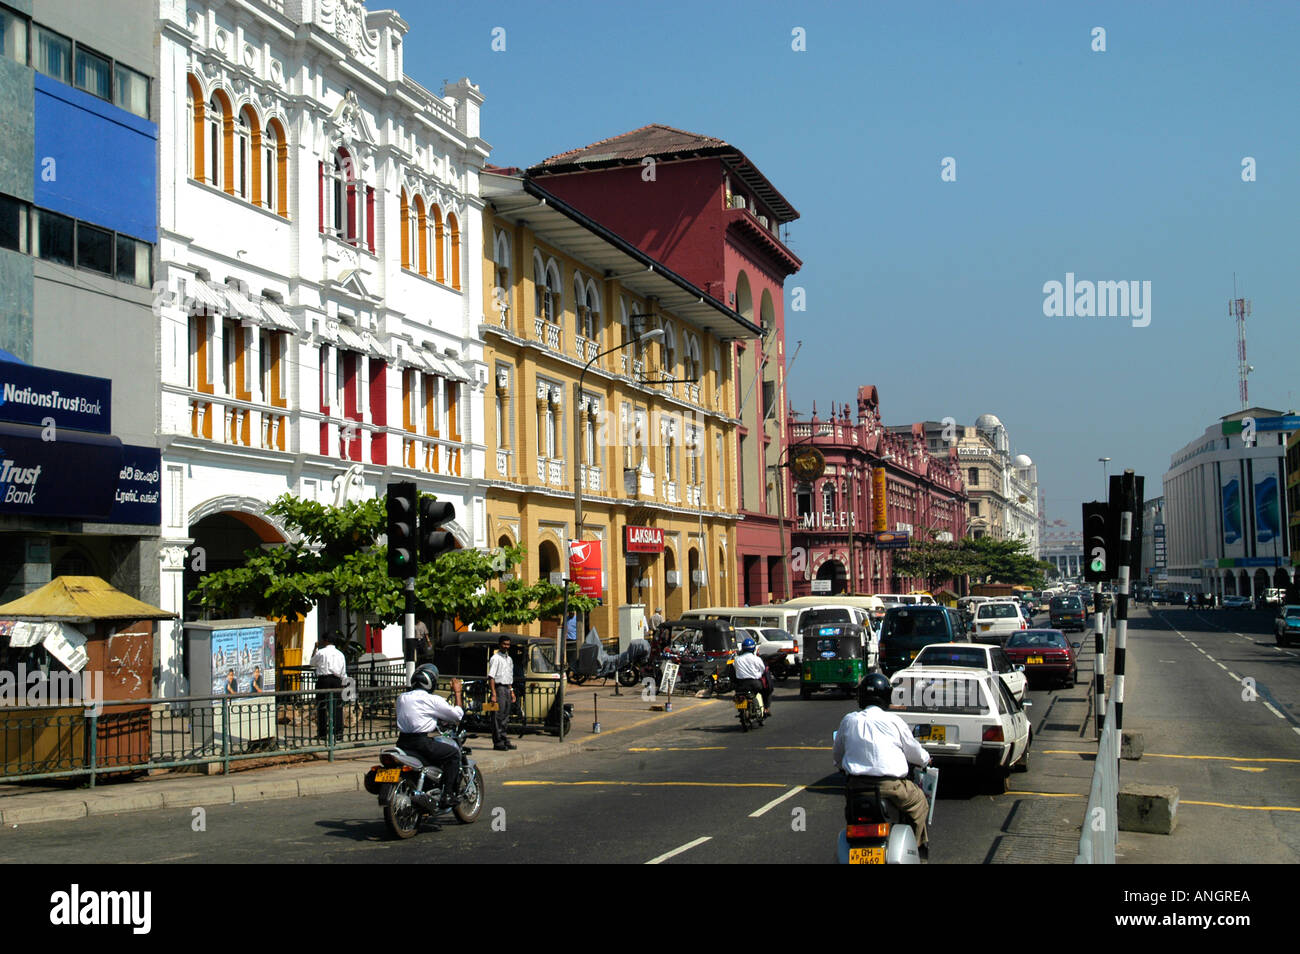 Sri_lanka_town Stockfotos und -bilder Kaufen - Alamy